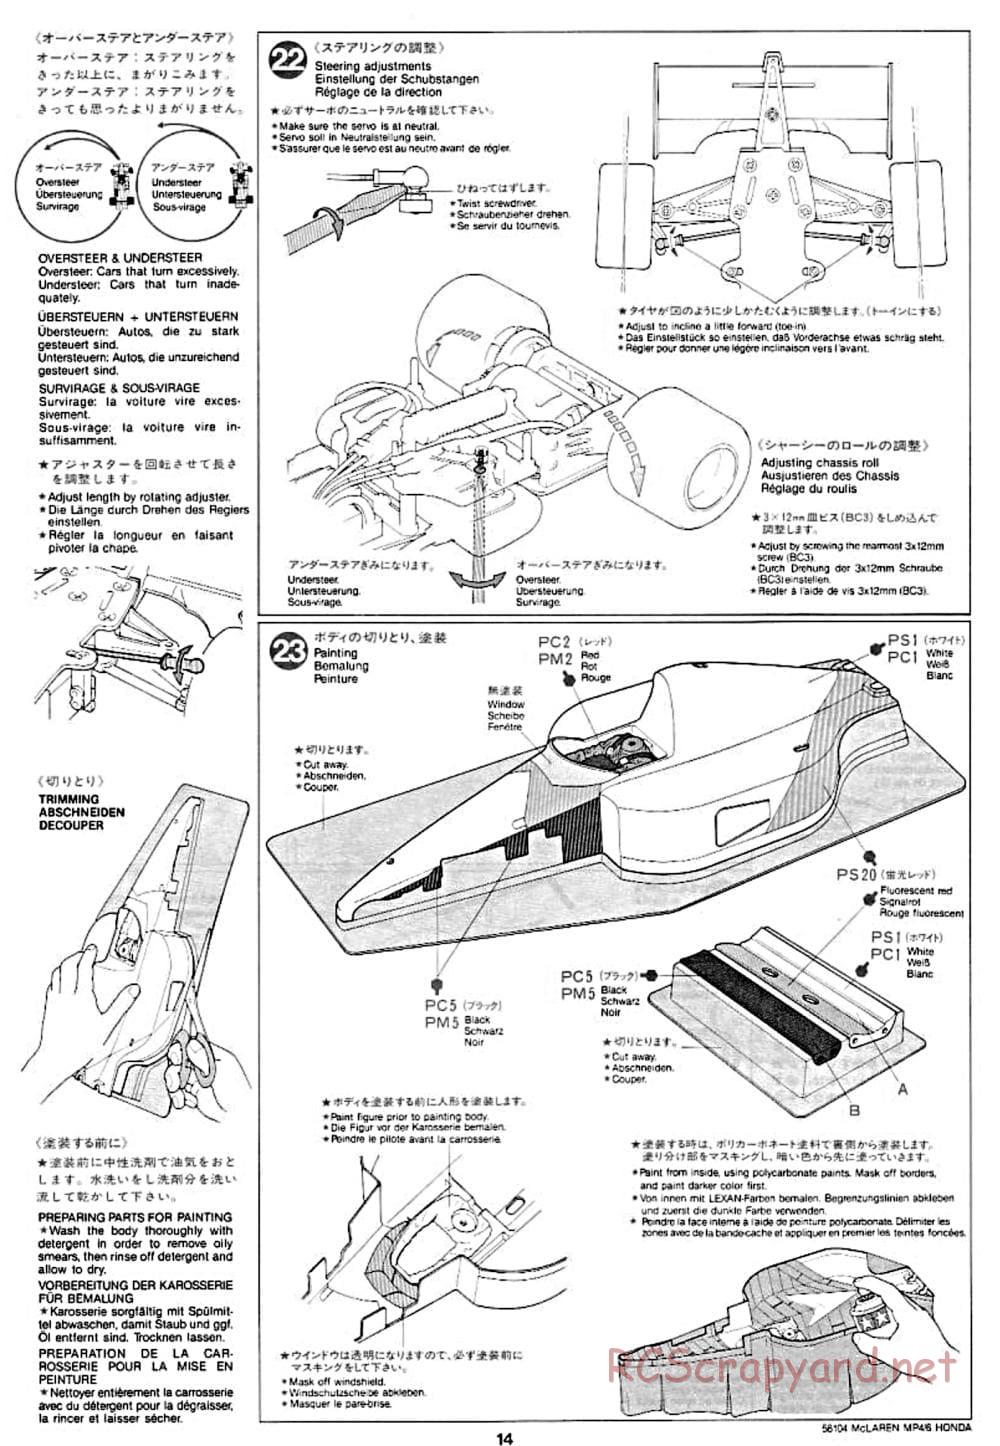 Tamiya - McLaren MP4/6 Honda - F102 Chassis - Manual - Page 14